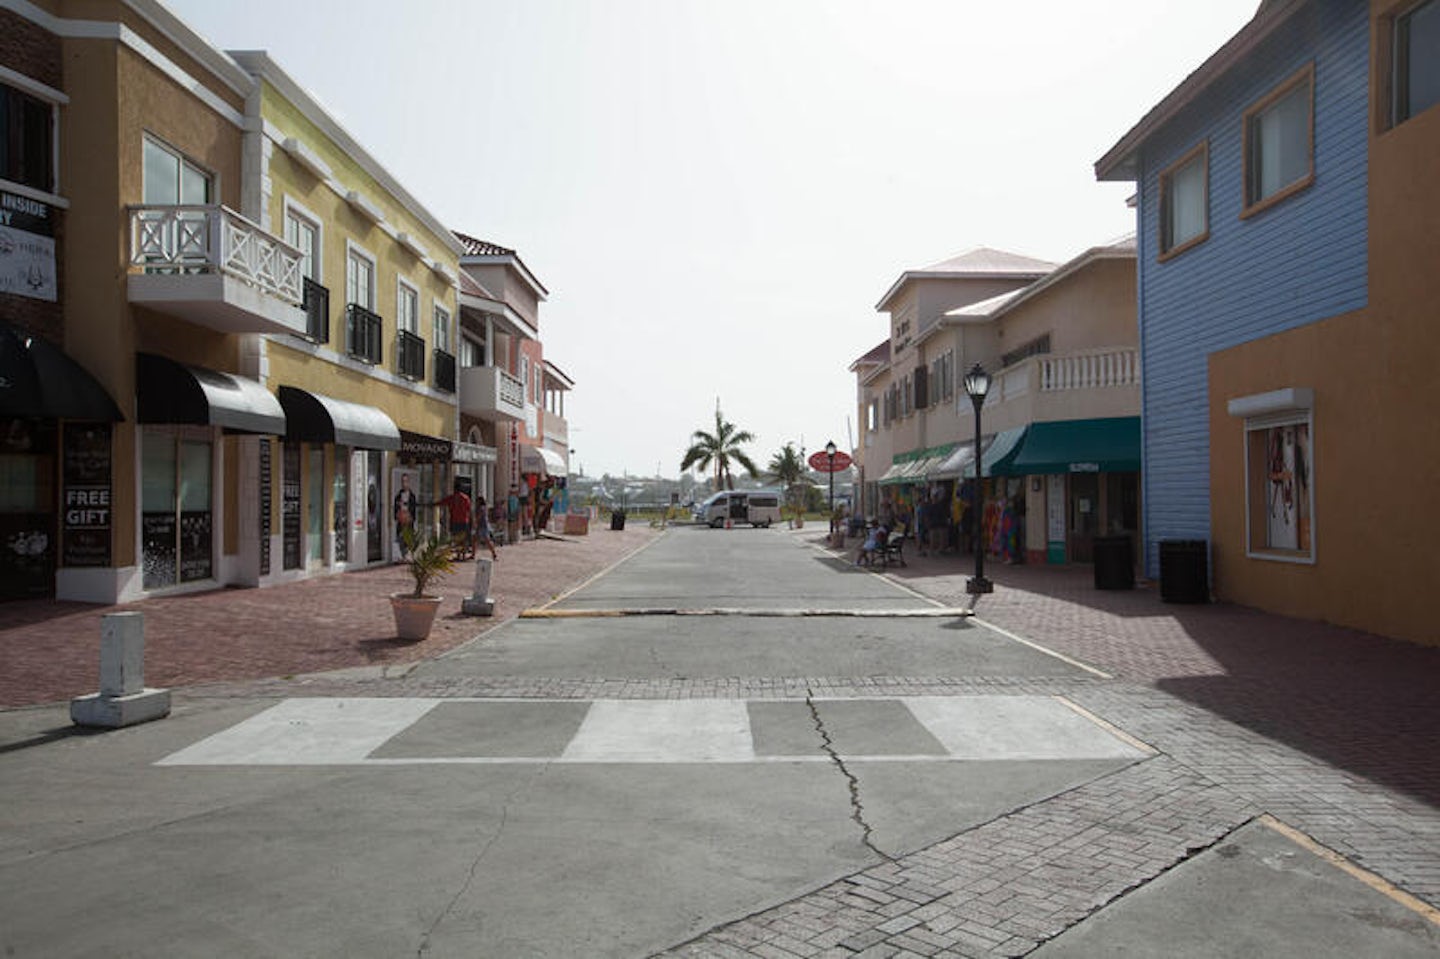 St. Kitts Port